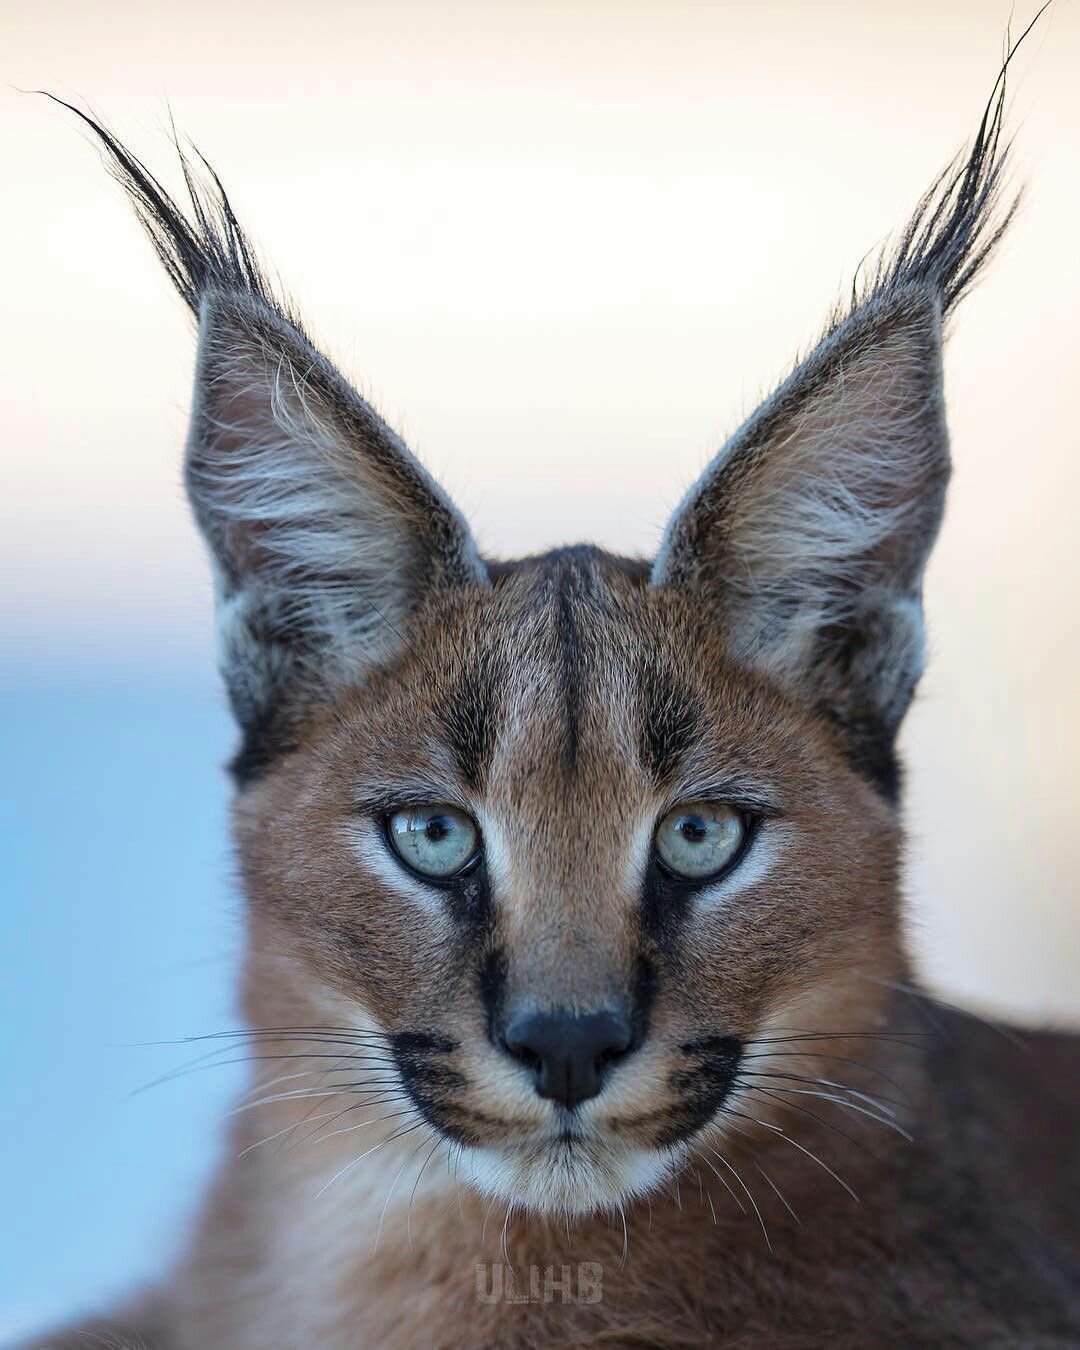 ФОТО: Порода кошек с кисточками на ушах 1